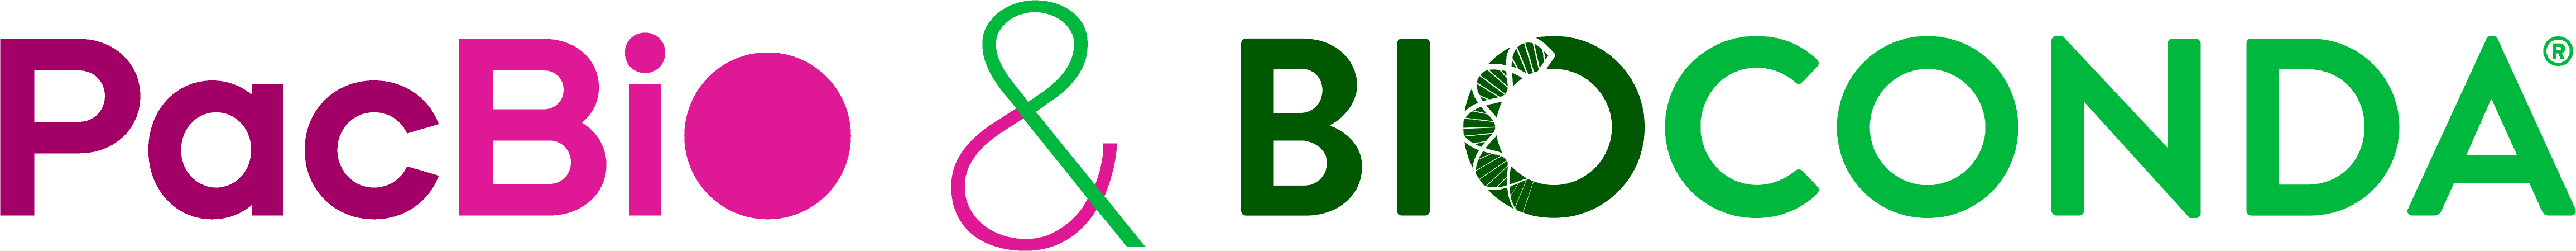 pbbioconda logo